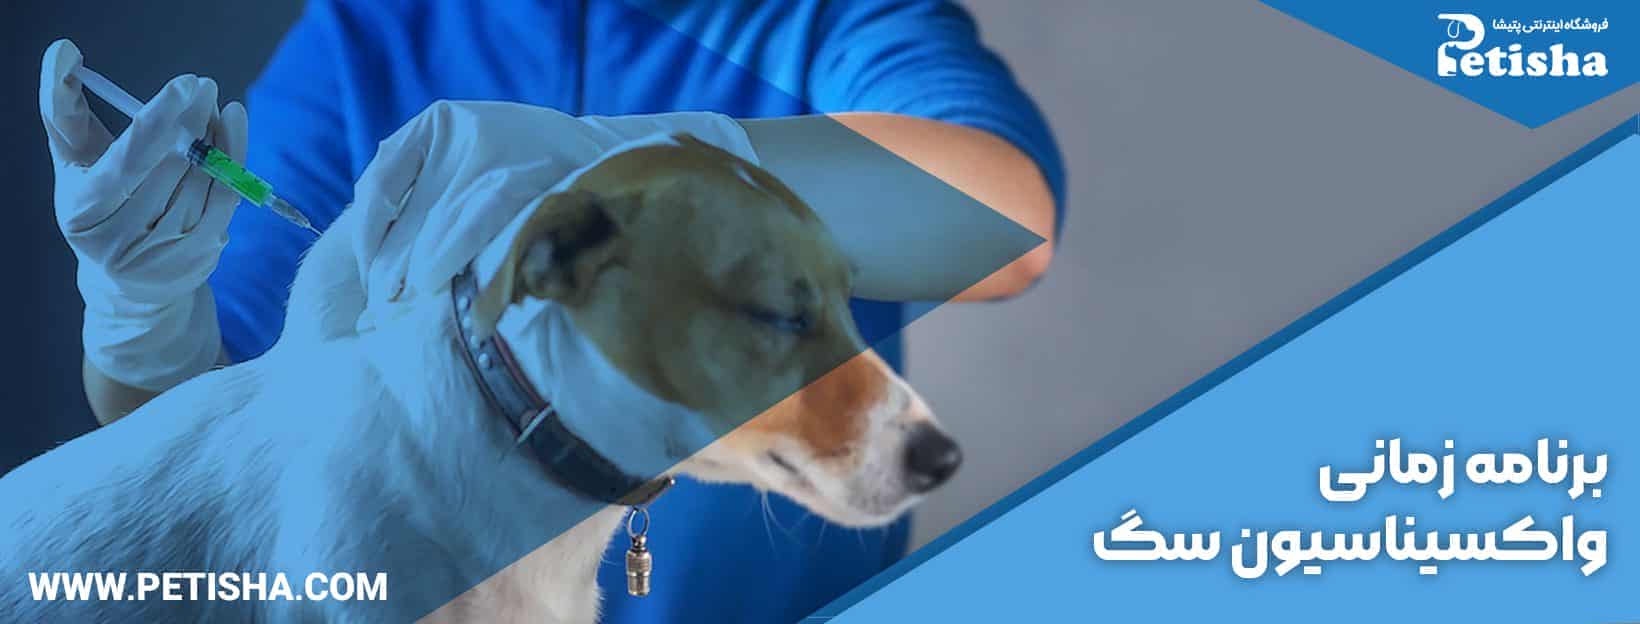 واکسیناسیون سگ | واکسیناسیون سگ های خانگی، برنامه صحیح واکسن سگ